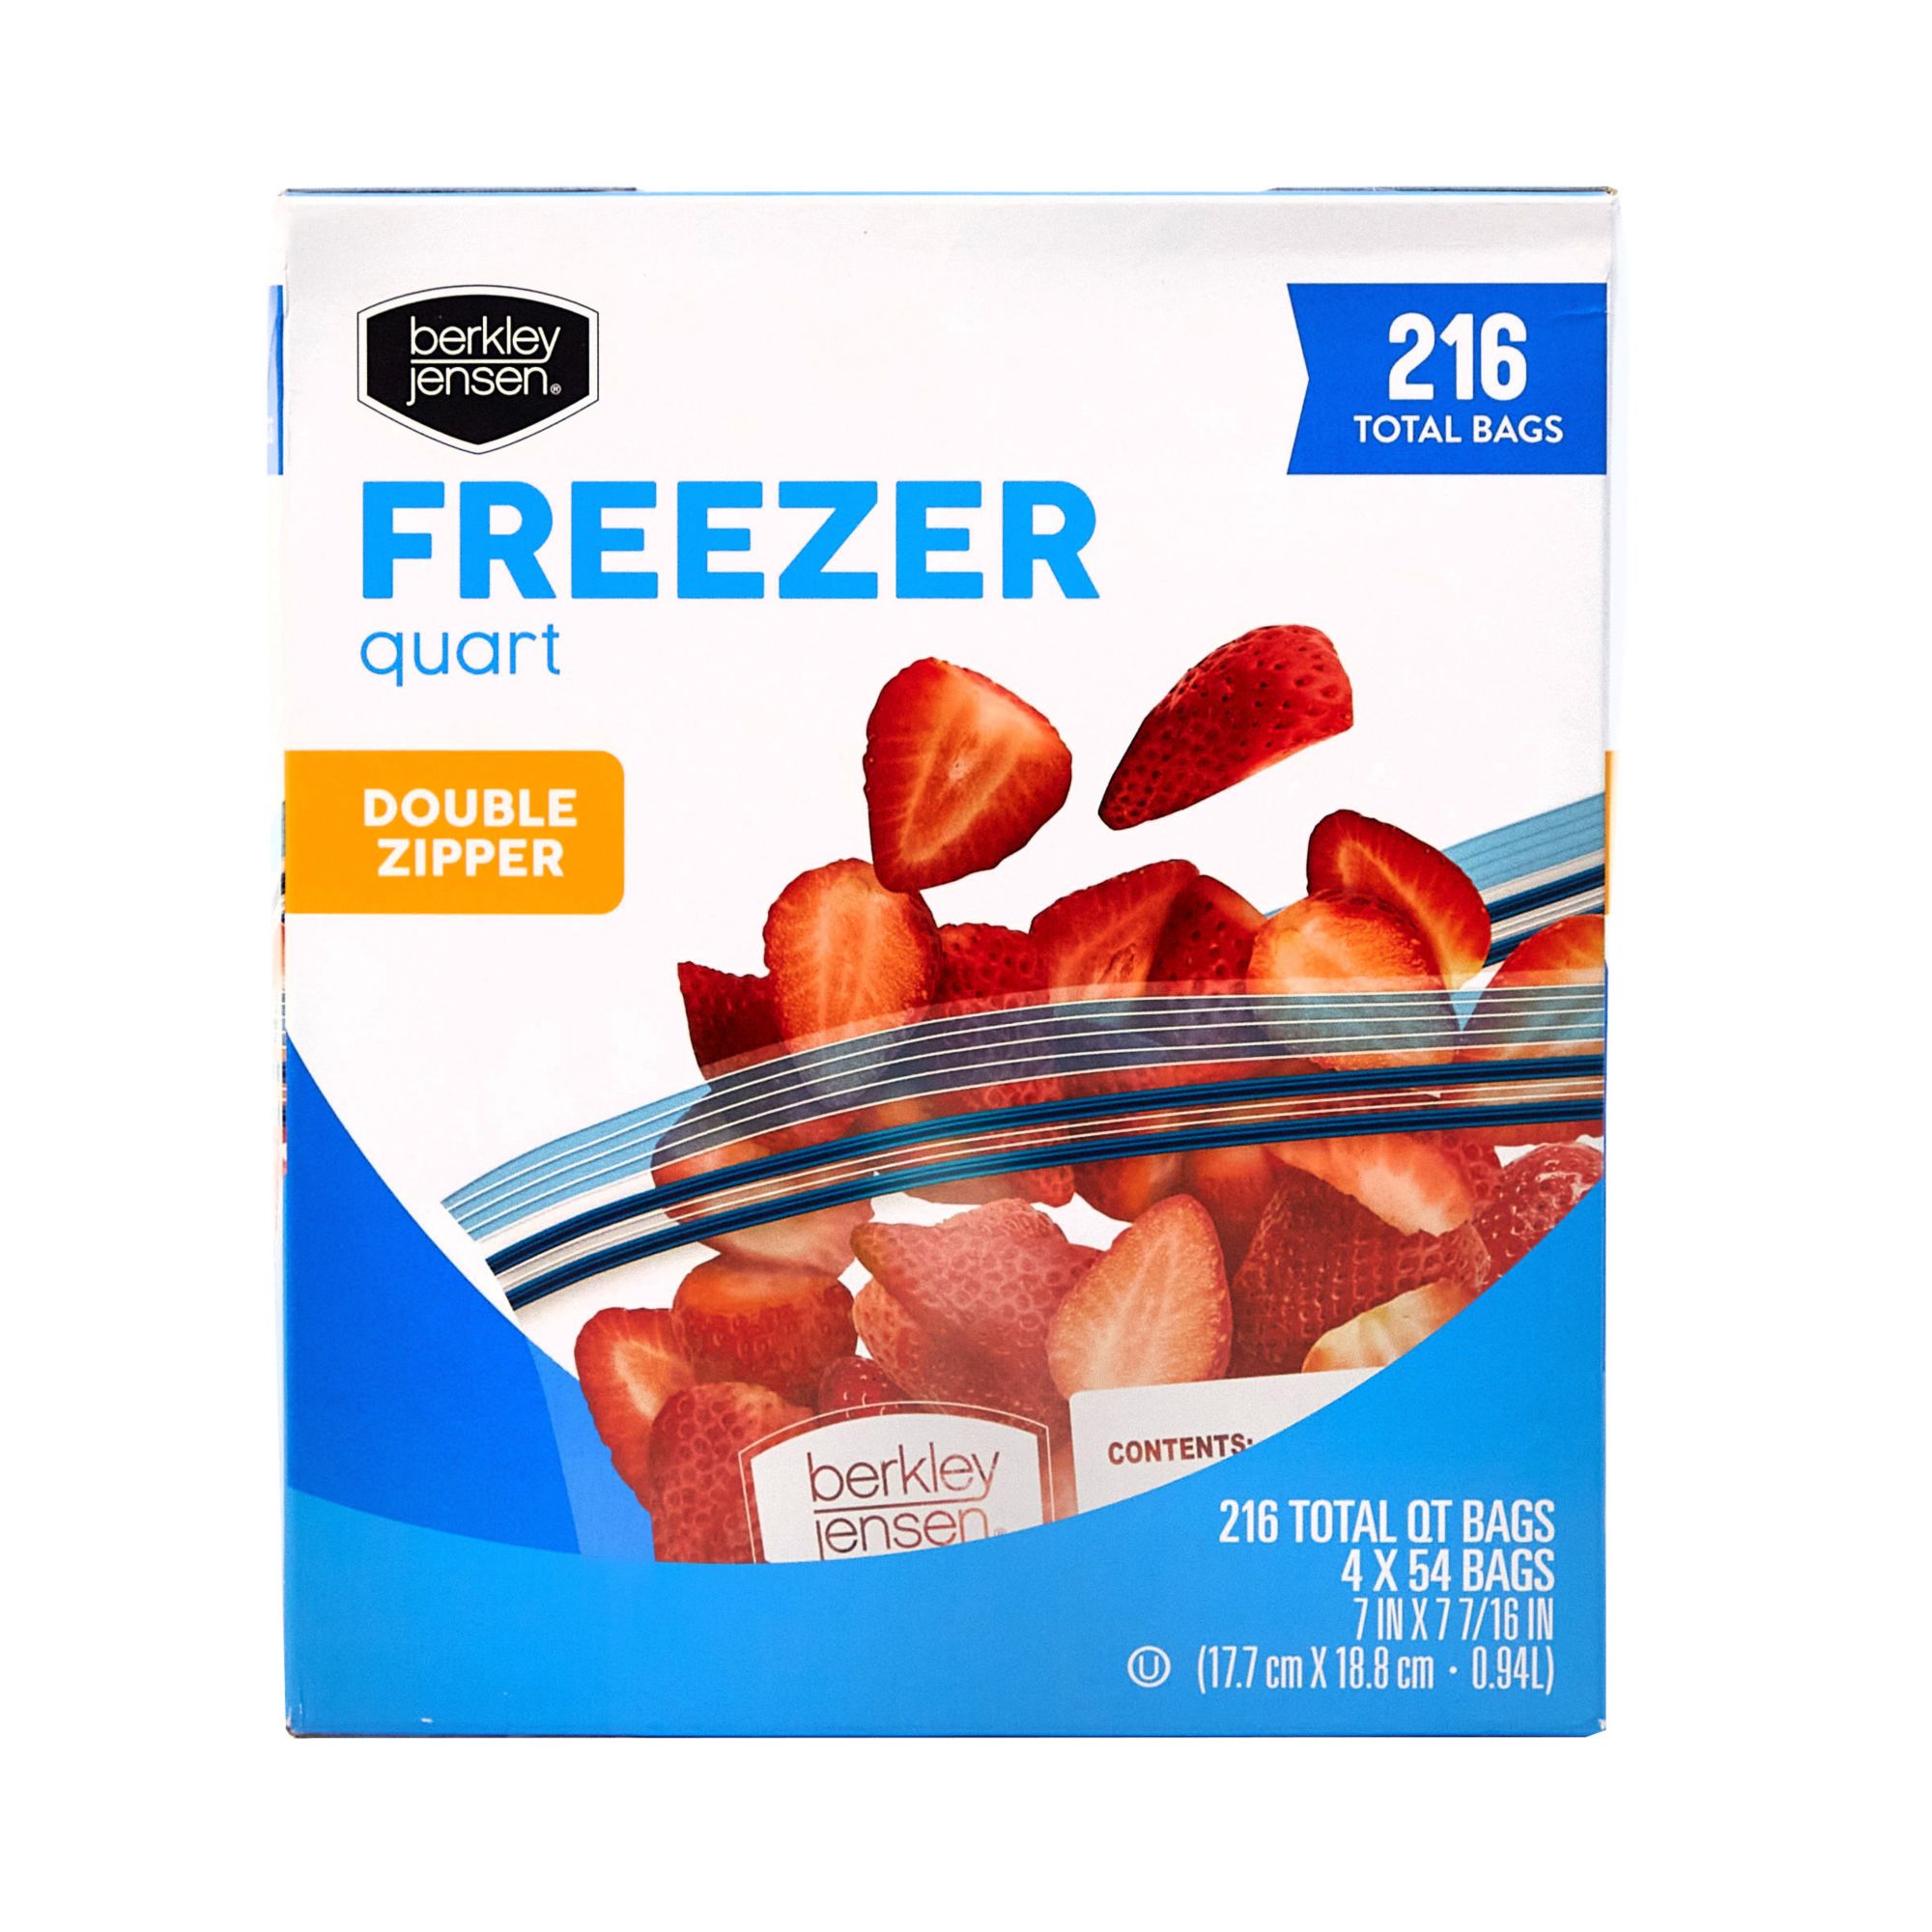 Berkley Jensen Freezer Quart Double Zip Bags, 216 ct.